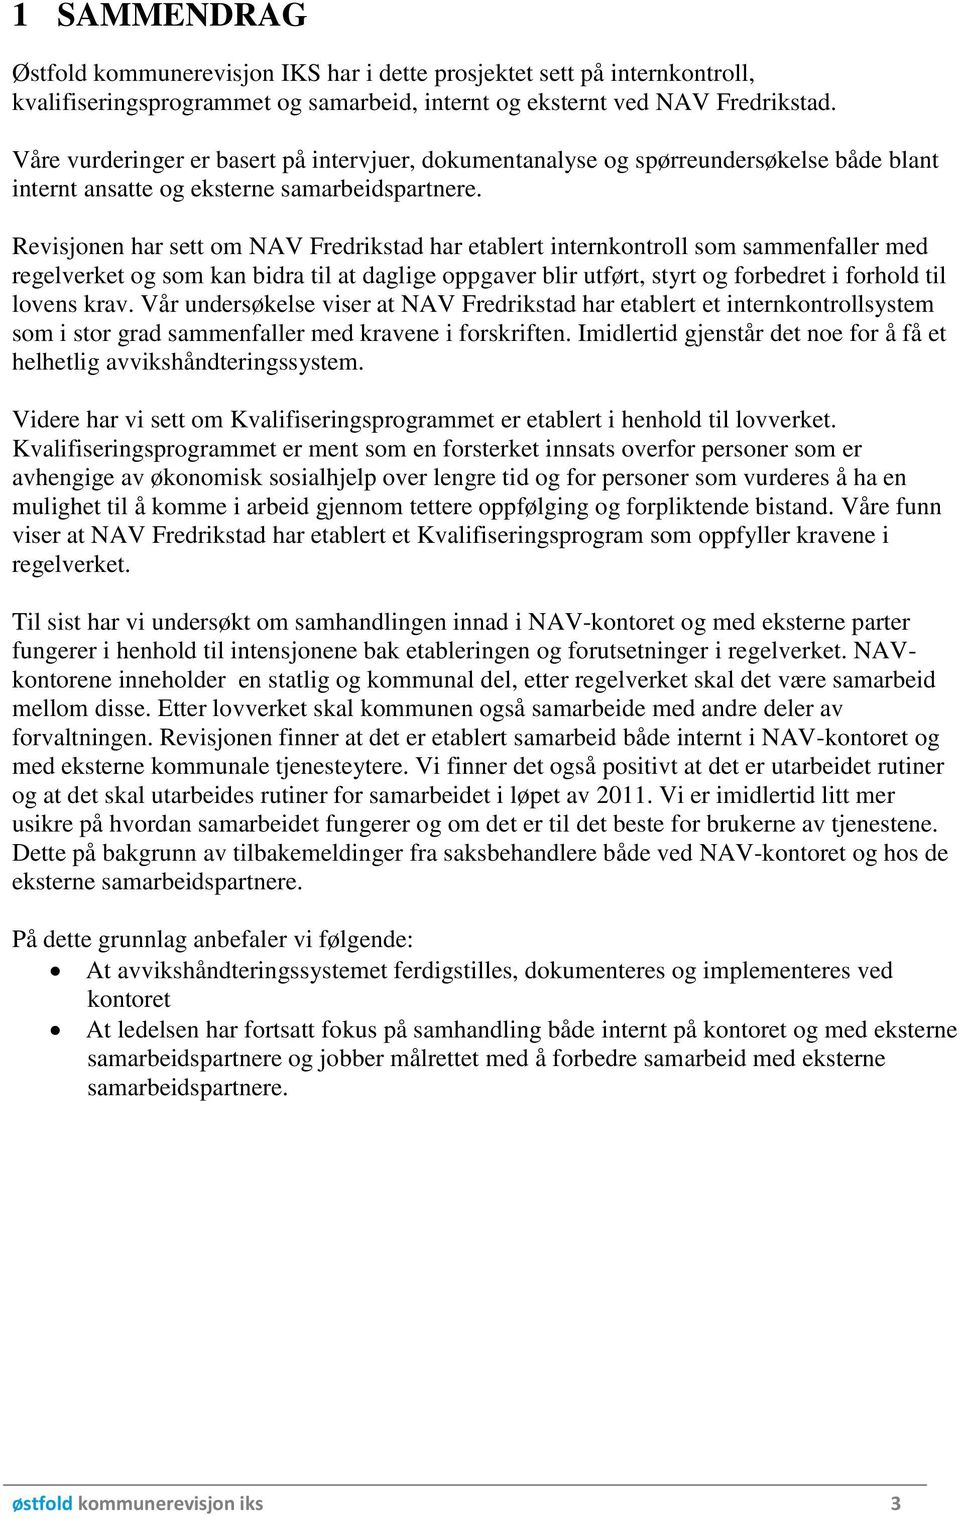 Revisjonen har sett om NAV Fredrikstad har etablert internkontroll som sammenfaller med regelverket og som kan bidra til at daglige oppgaver blir utført, styrt og forbedret i forhold til lovens krav.